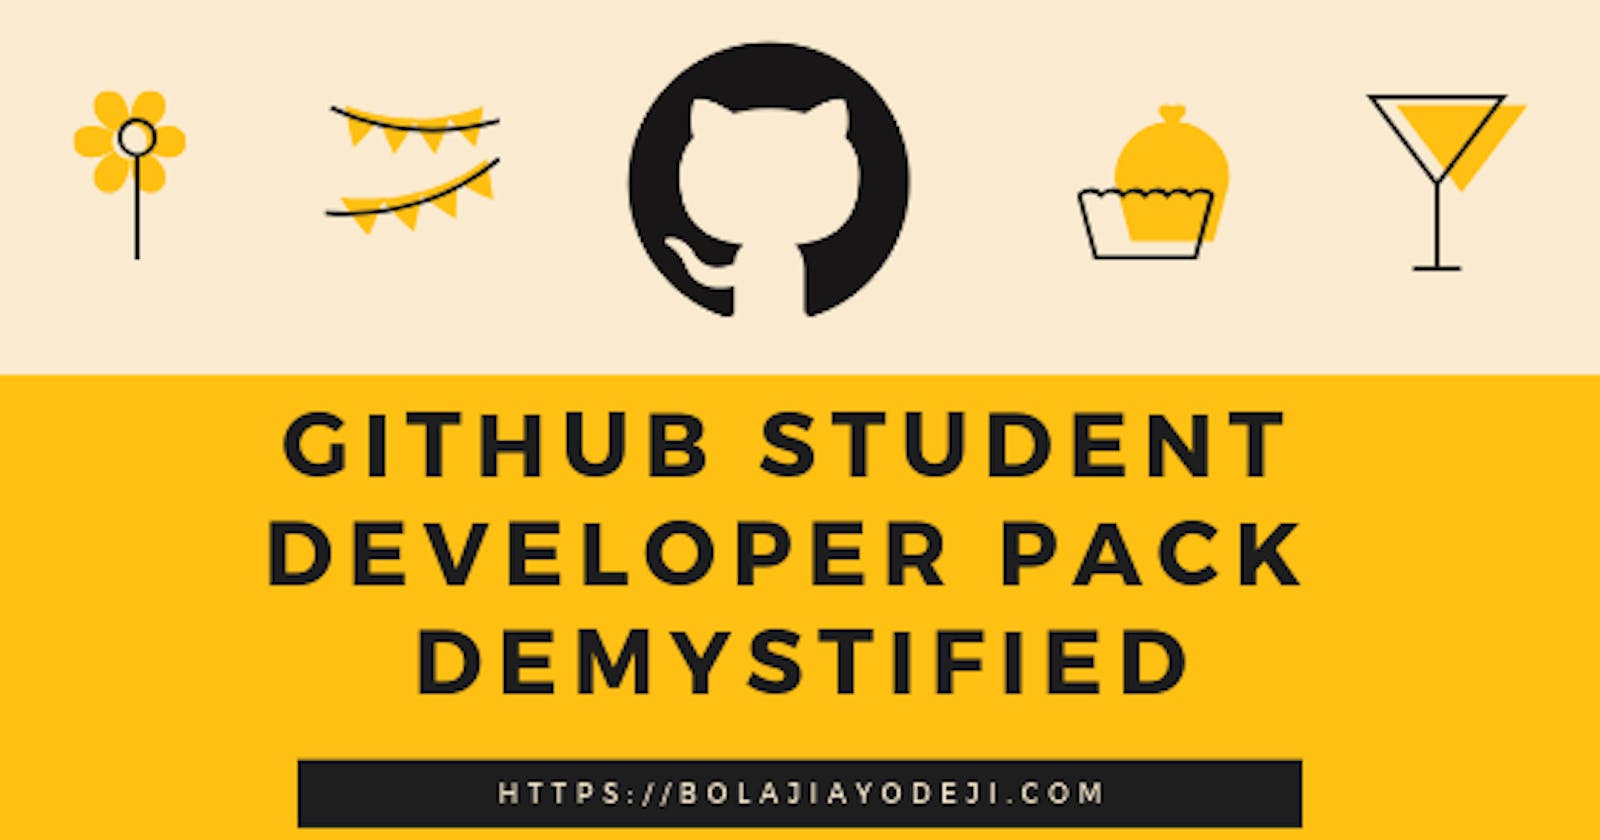 GitHub Student Developer Pack Demystified